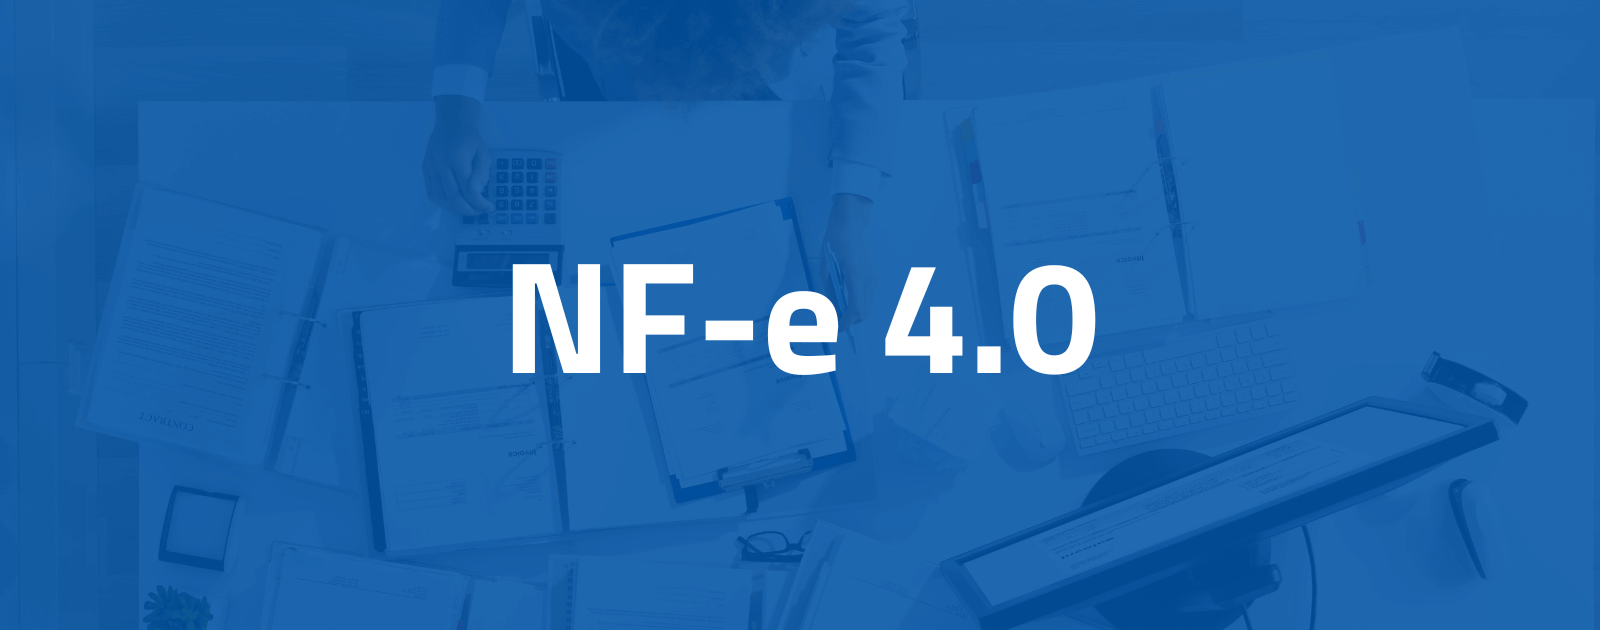 NF-e 4.0 começa a valer em julho: o que muda para as empresas